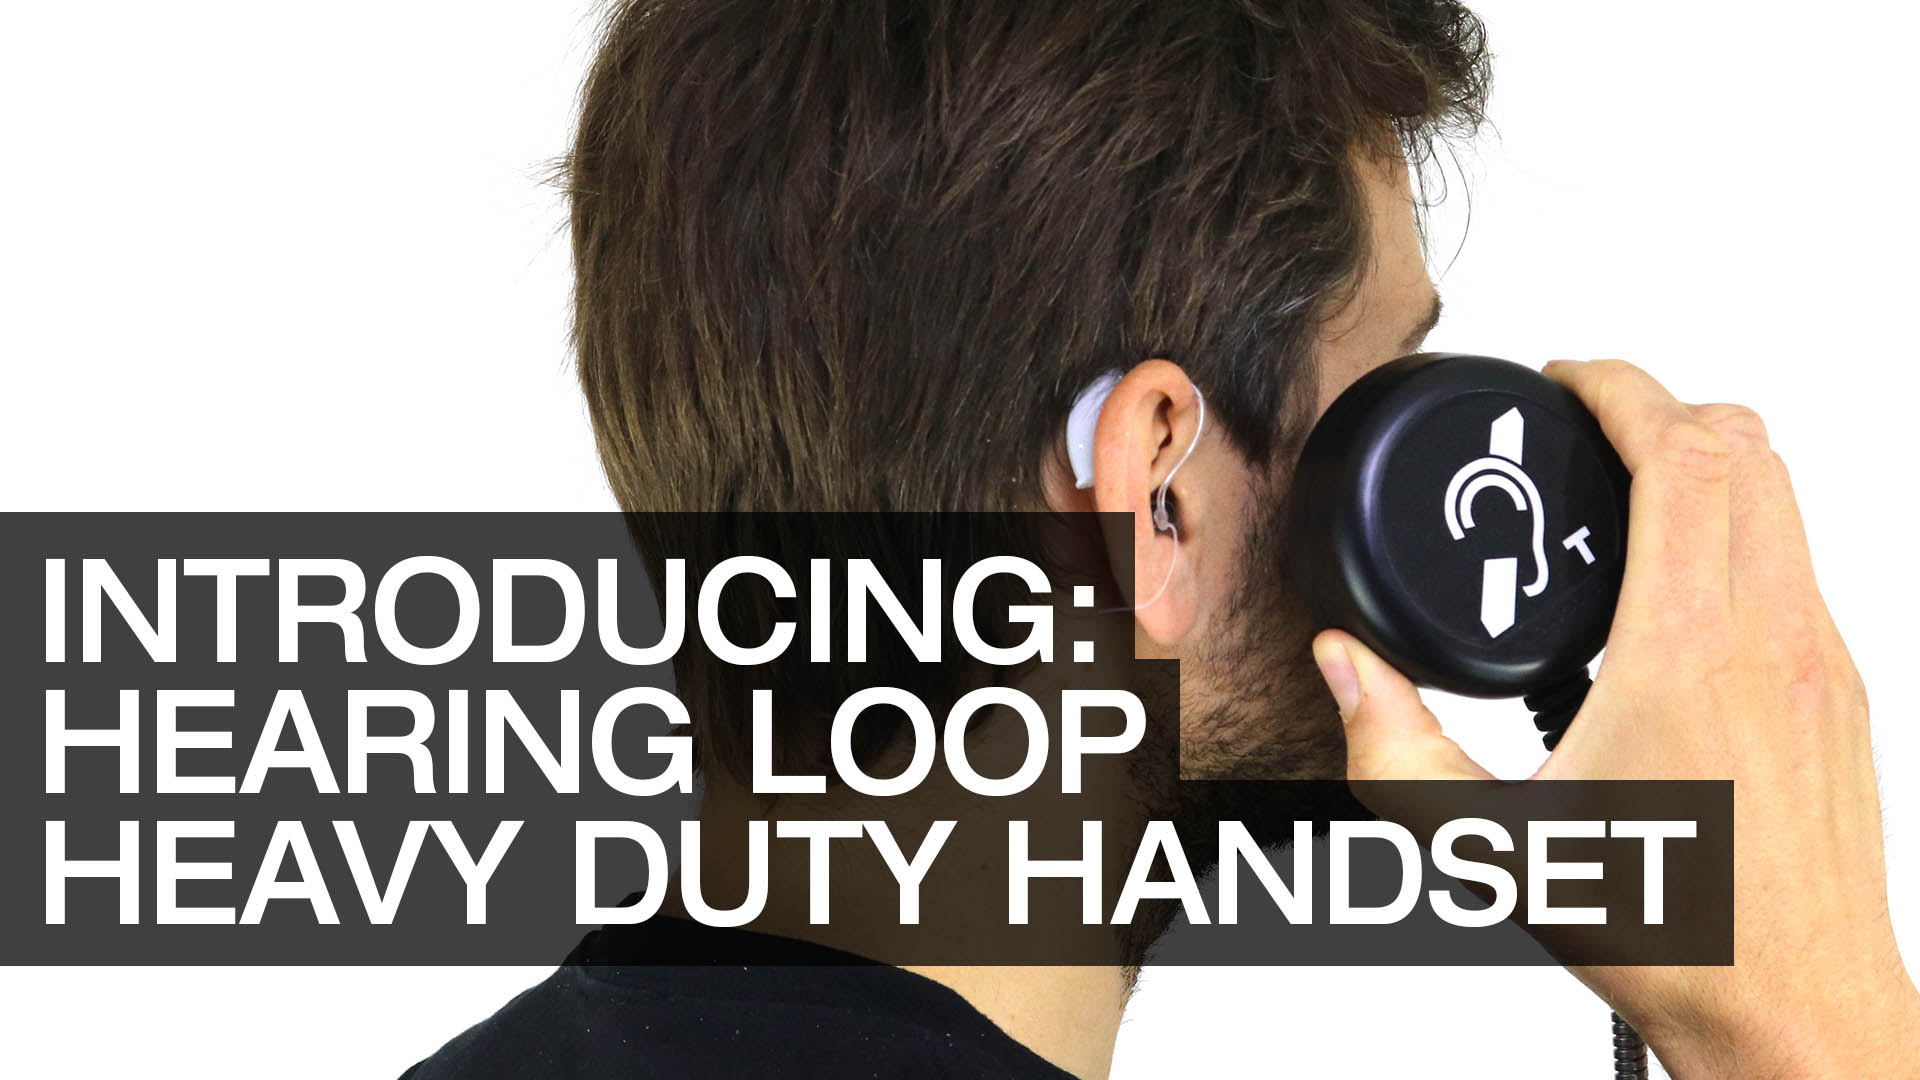 Introducing Hearing Loop HDH